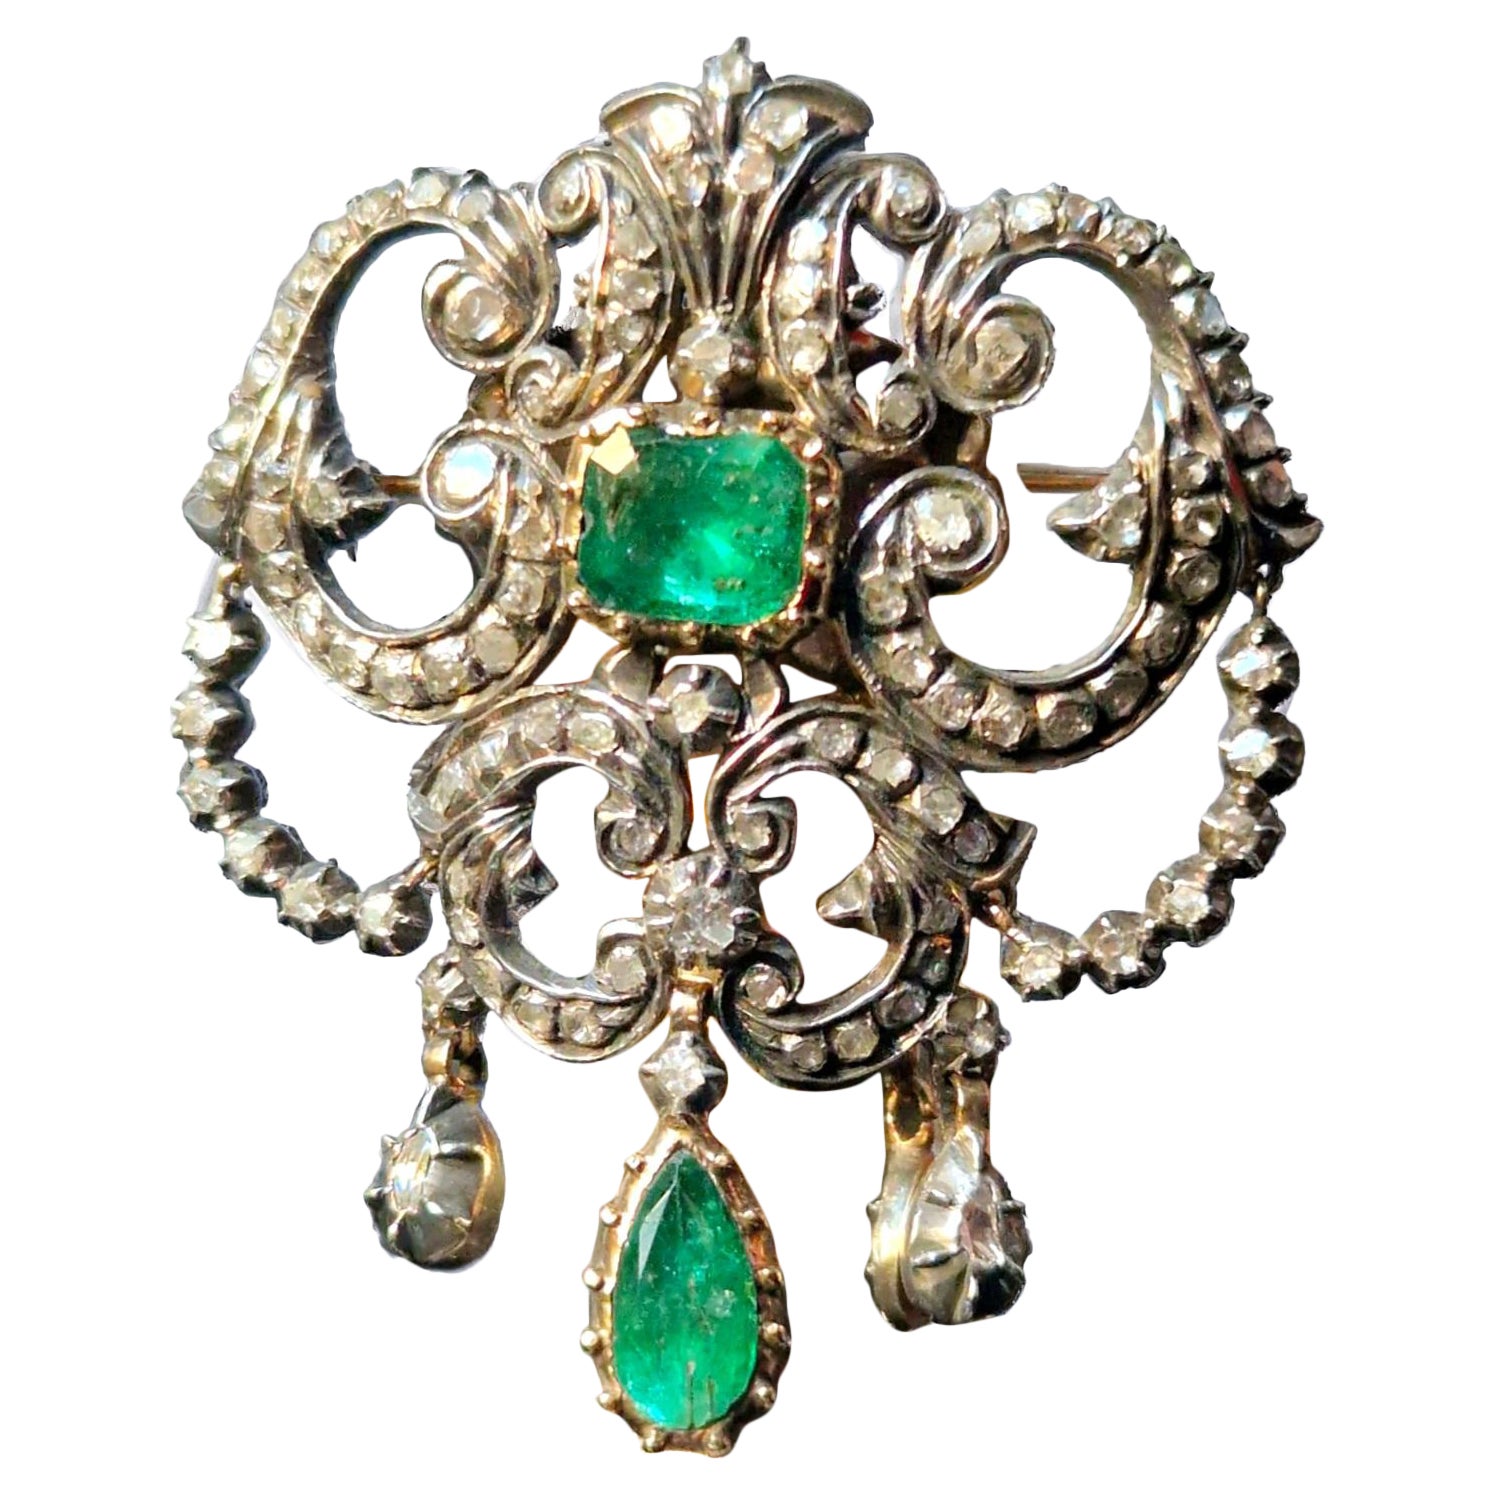 Barocker iberischer (spanischer) Smaragd- und Diamant-Anhänger/Brosche aus dem 18. Jahrhundert